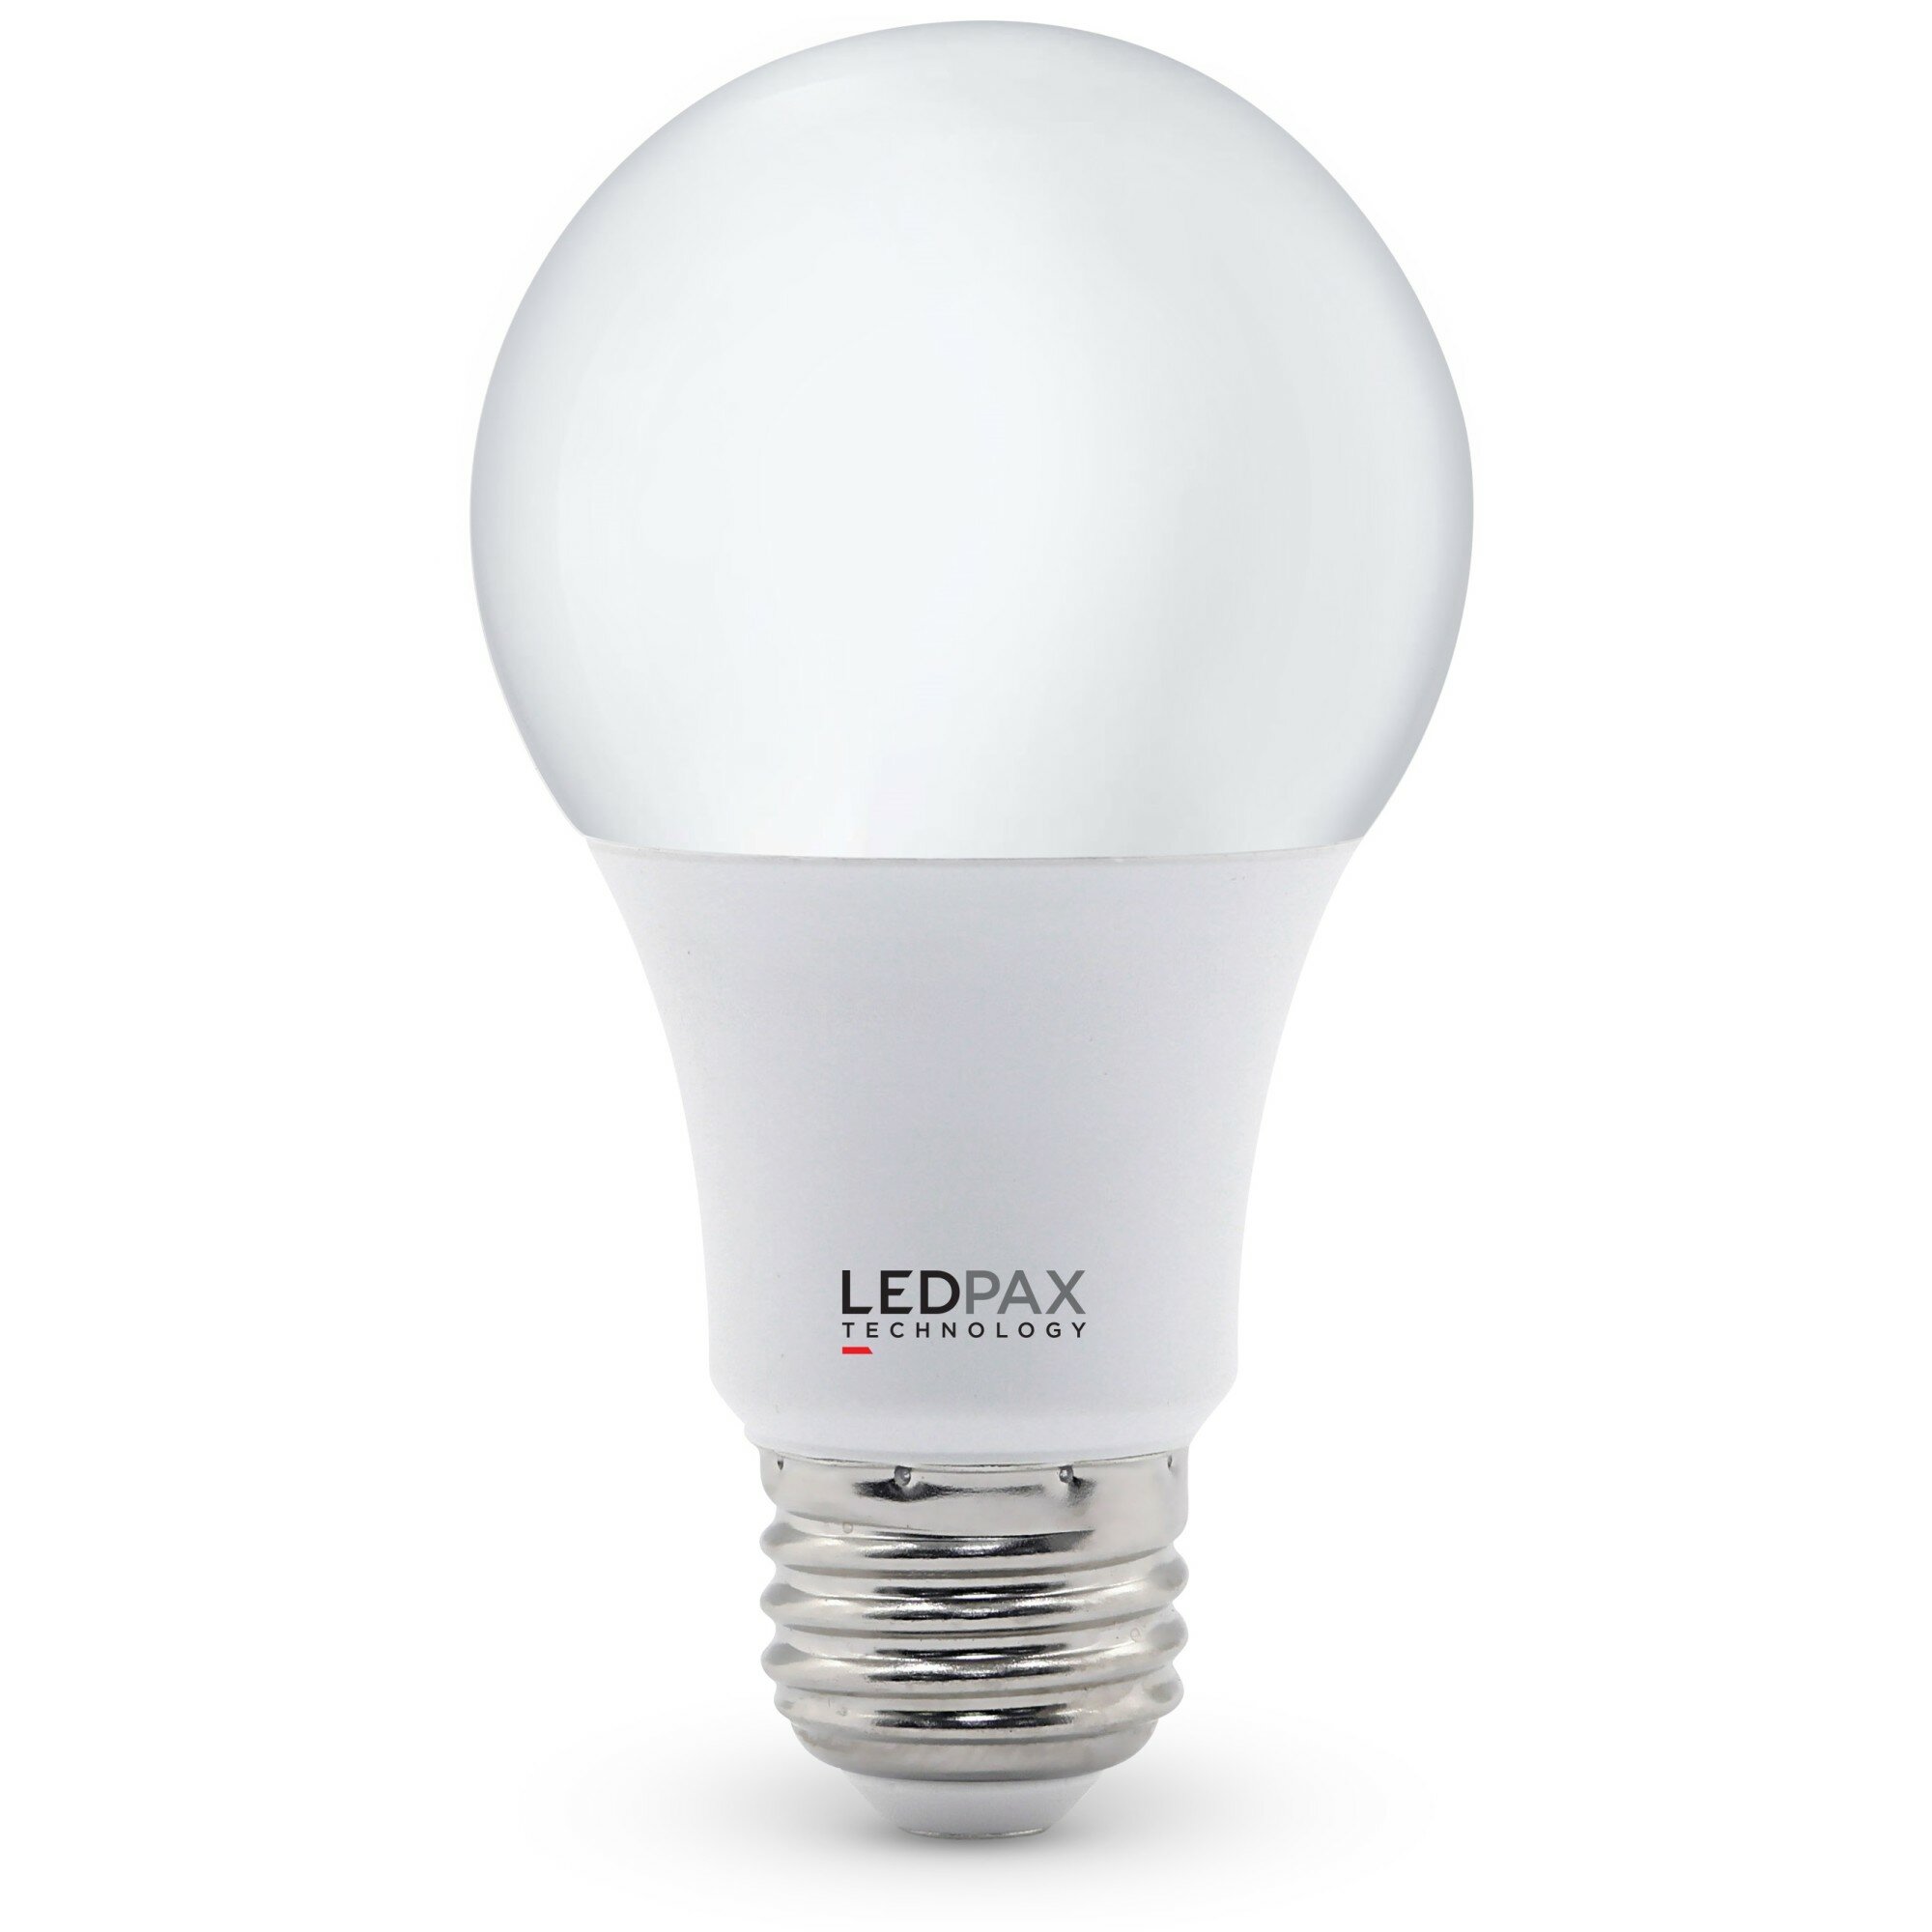 MD Lighting 5W E26/E27 LED Bulb Corn Light Bulbs 5 Pack 5730 SMD 24 LEDs Bulb Lamp 450LM Daylight White 6000K LED Corn Bulb Replacement for Home Office Bar Ceiling Light Wall Lamp,AC110V-130V